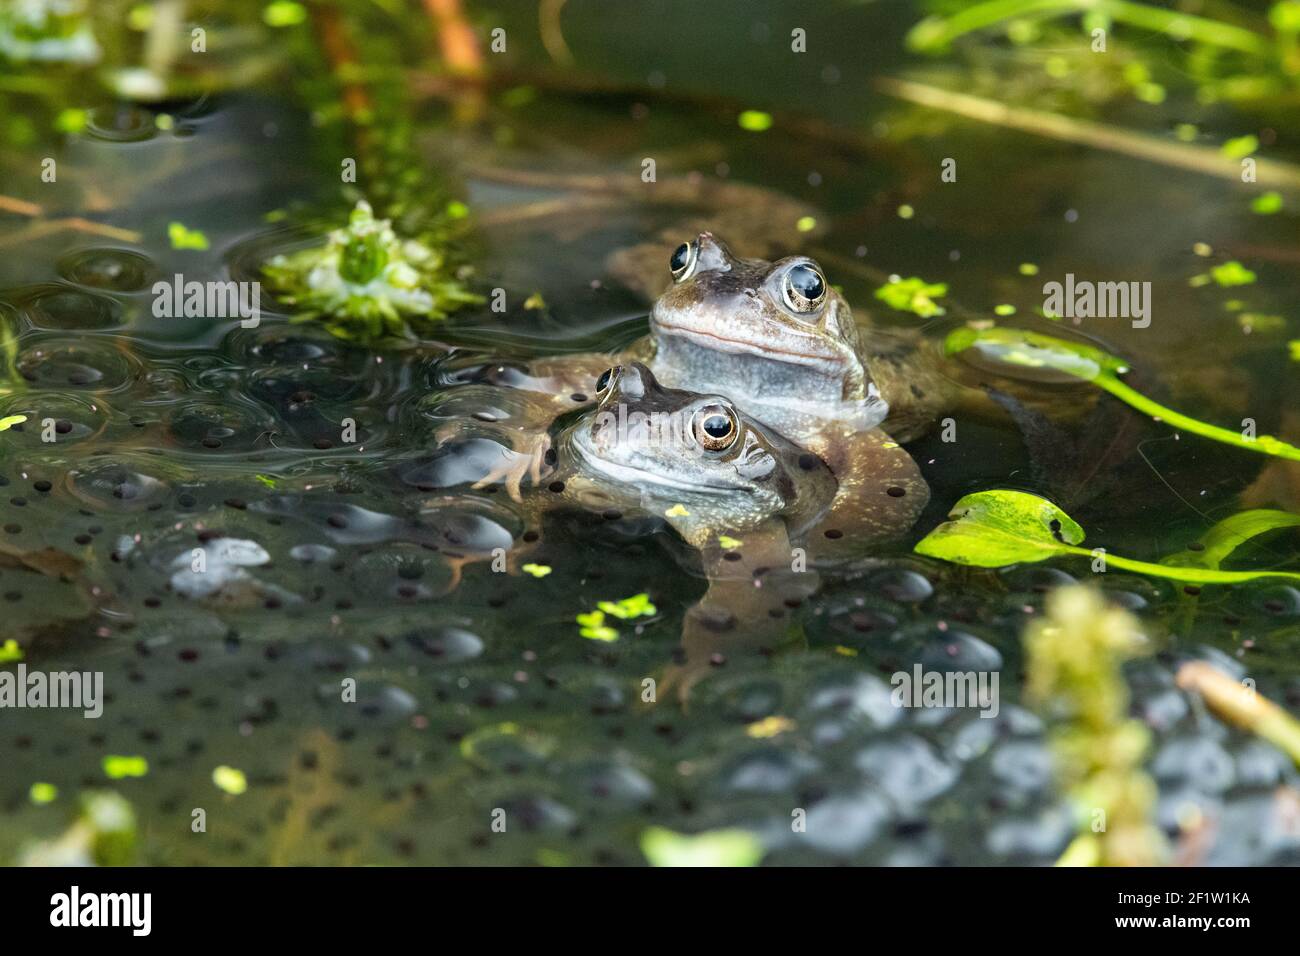 Grenouilles communes (Rana temporaria) accouplement au printemps entouré de grenouilles, étang de la faune du jardin, Écosse, Royaume-Uni Banque D'Images